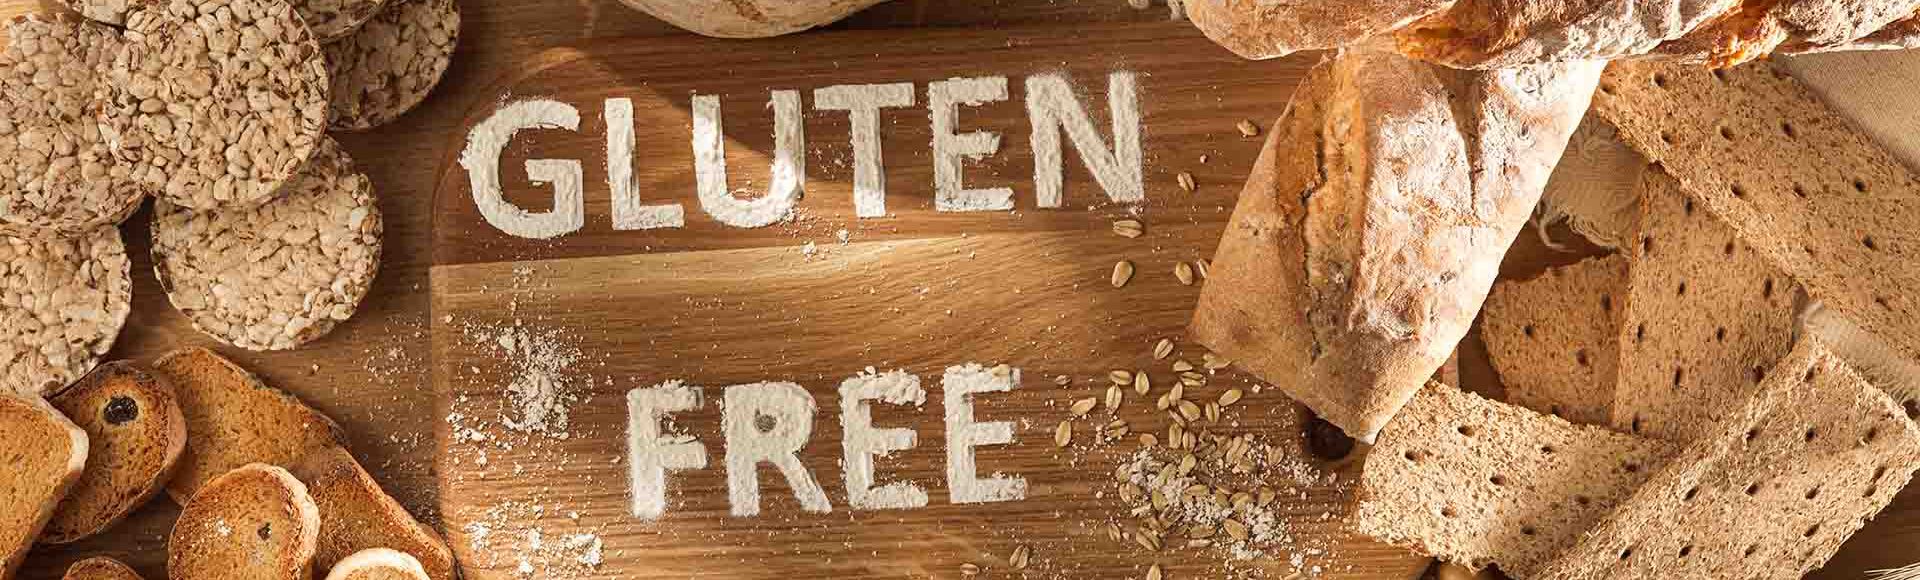 Alimentos à base de trigo e escrito "glúten" com farinha ao centro